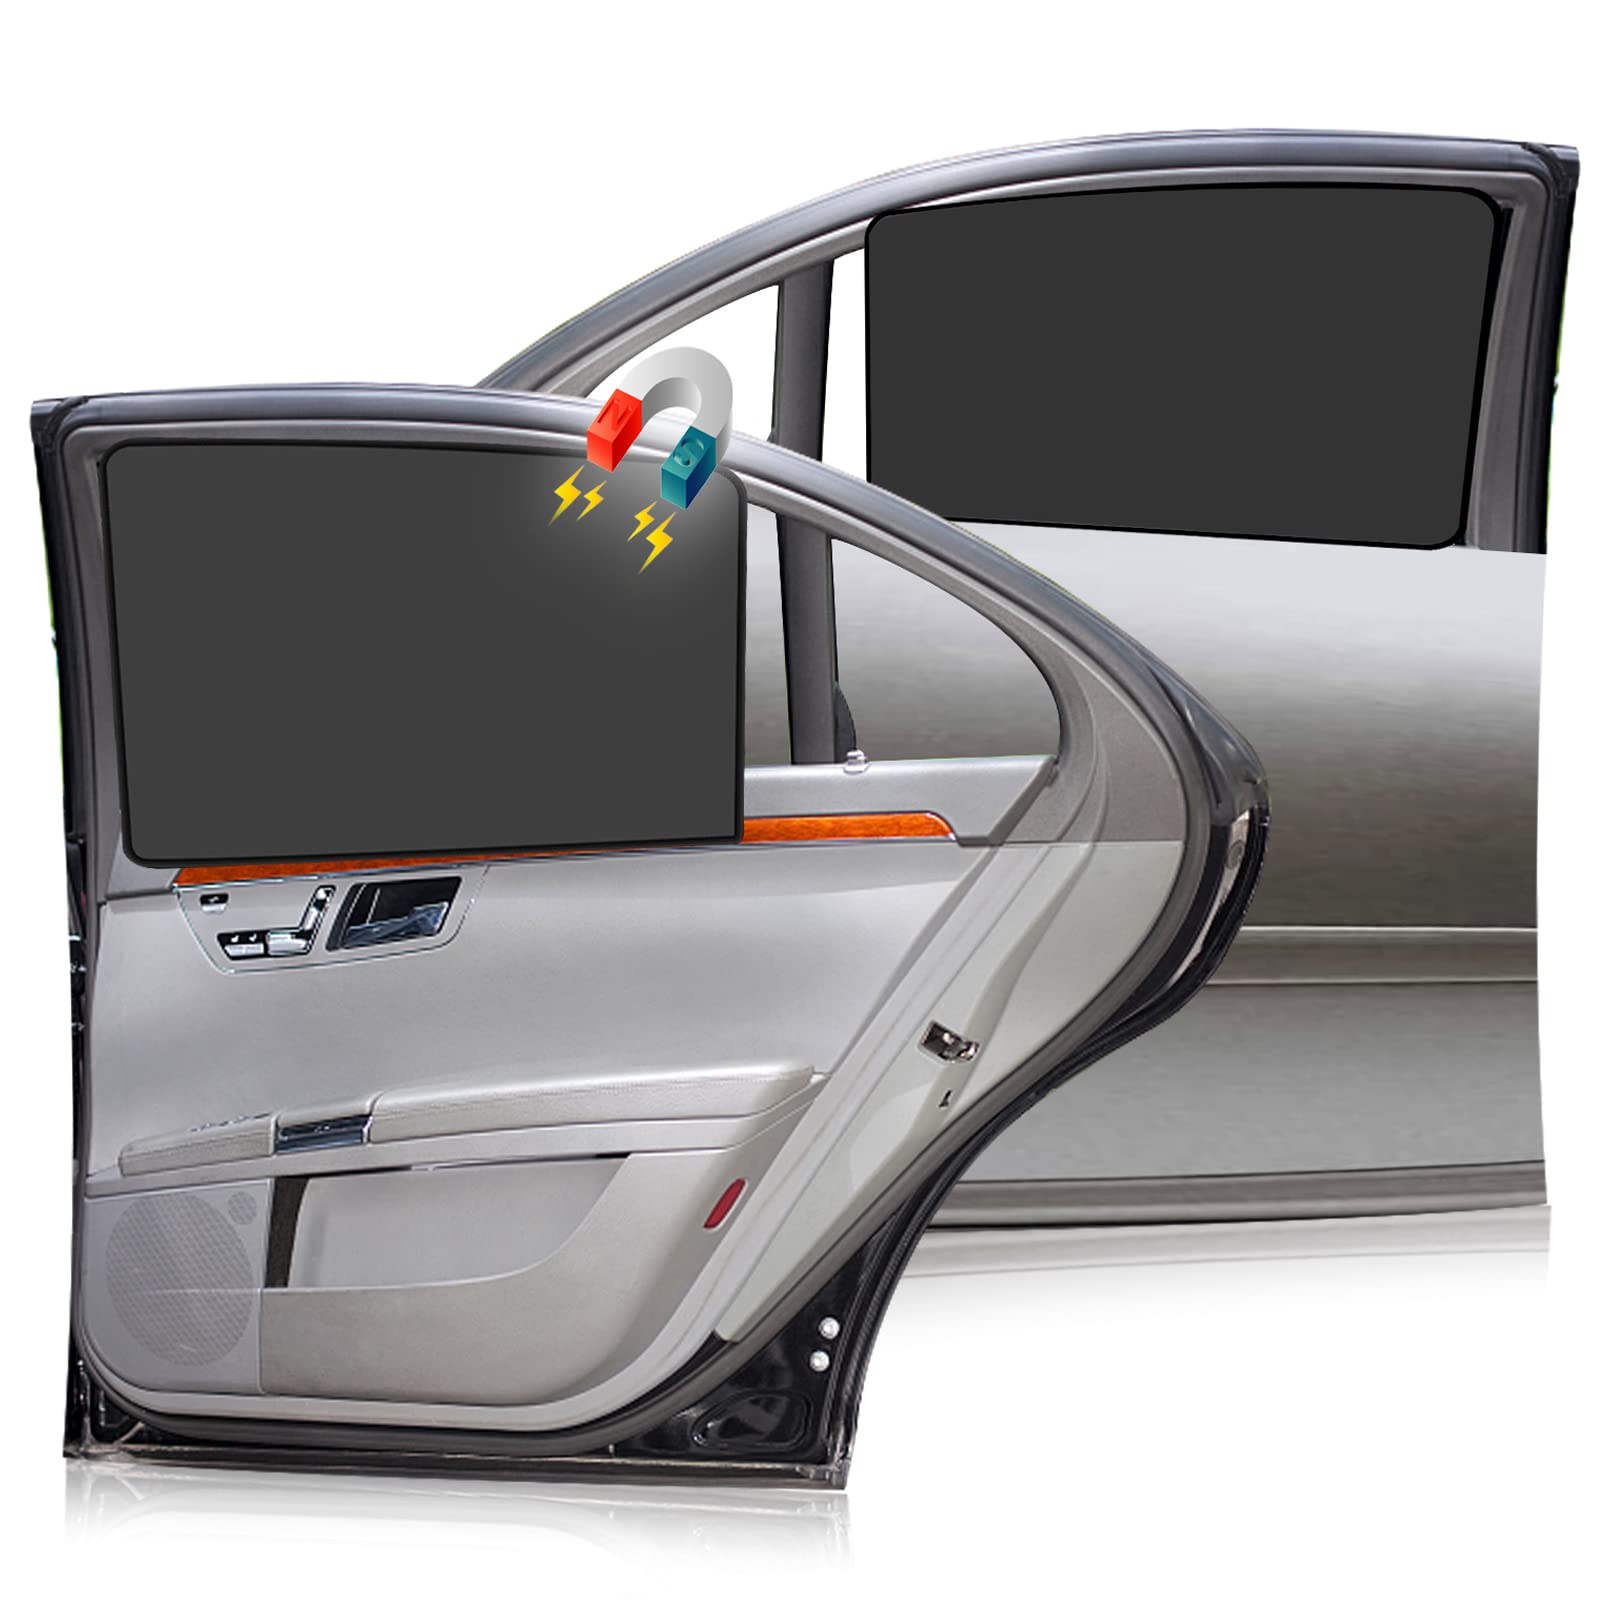 Magnetische Sonnenschutz Auto,2 Stück Magnetisch Sonnenschutz Vorhang fürs Auto mit UV Schutz/Blendschutz Reflektierende Hitzeschutz Vorhang, für Schützt Mitfahrer&Kinder (B) von ENAIAH